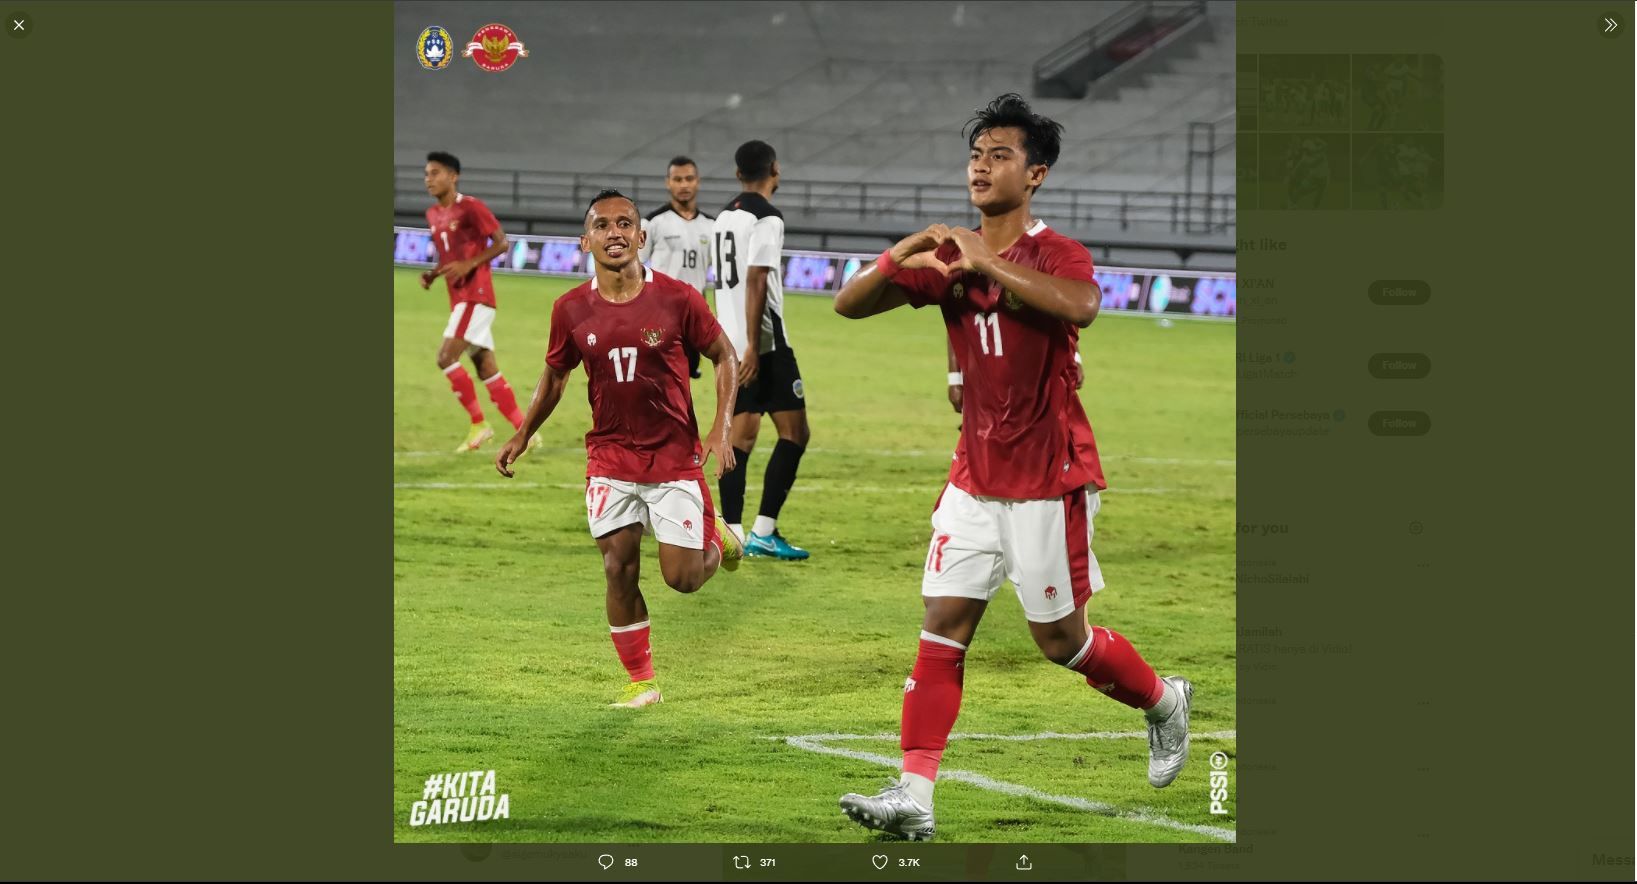 Update Ranking FIFA: Posisi Timnas Indonesia Naik 3 Tingkat Setelah Kalahkan Timor Leste 4-1